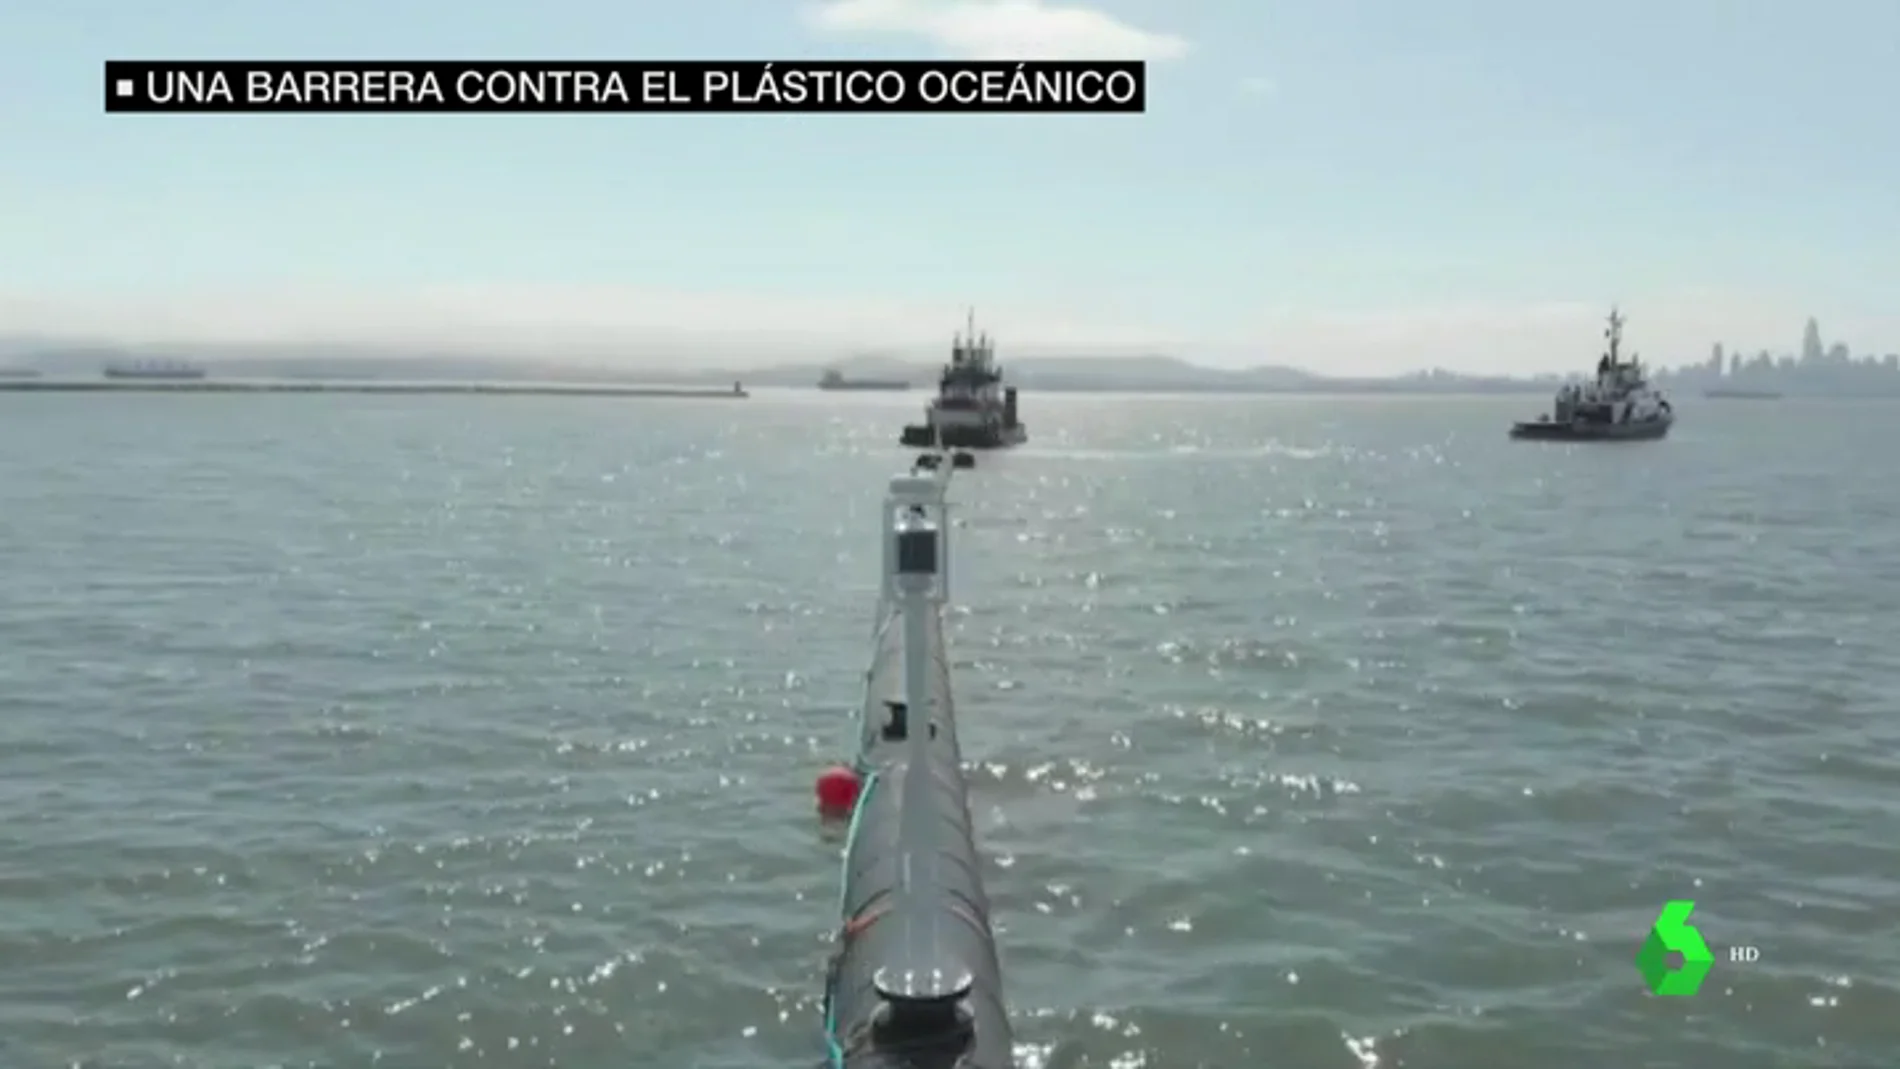 Imagen de la barrera contra el plástico en el océano